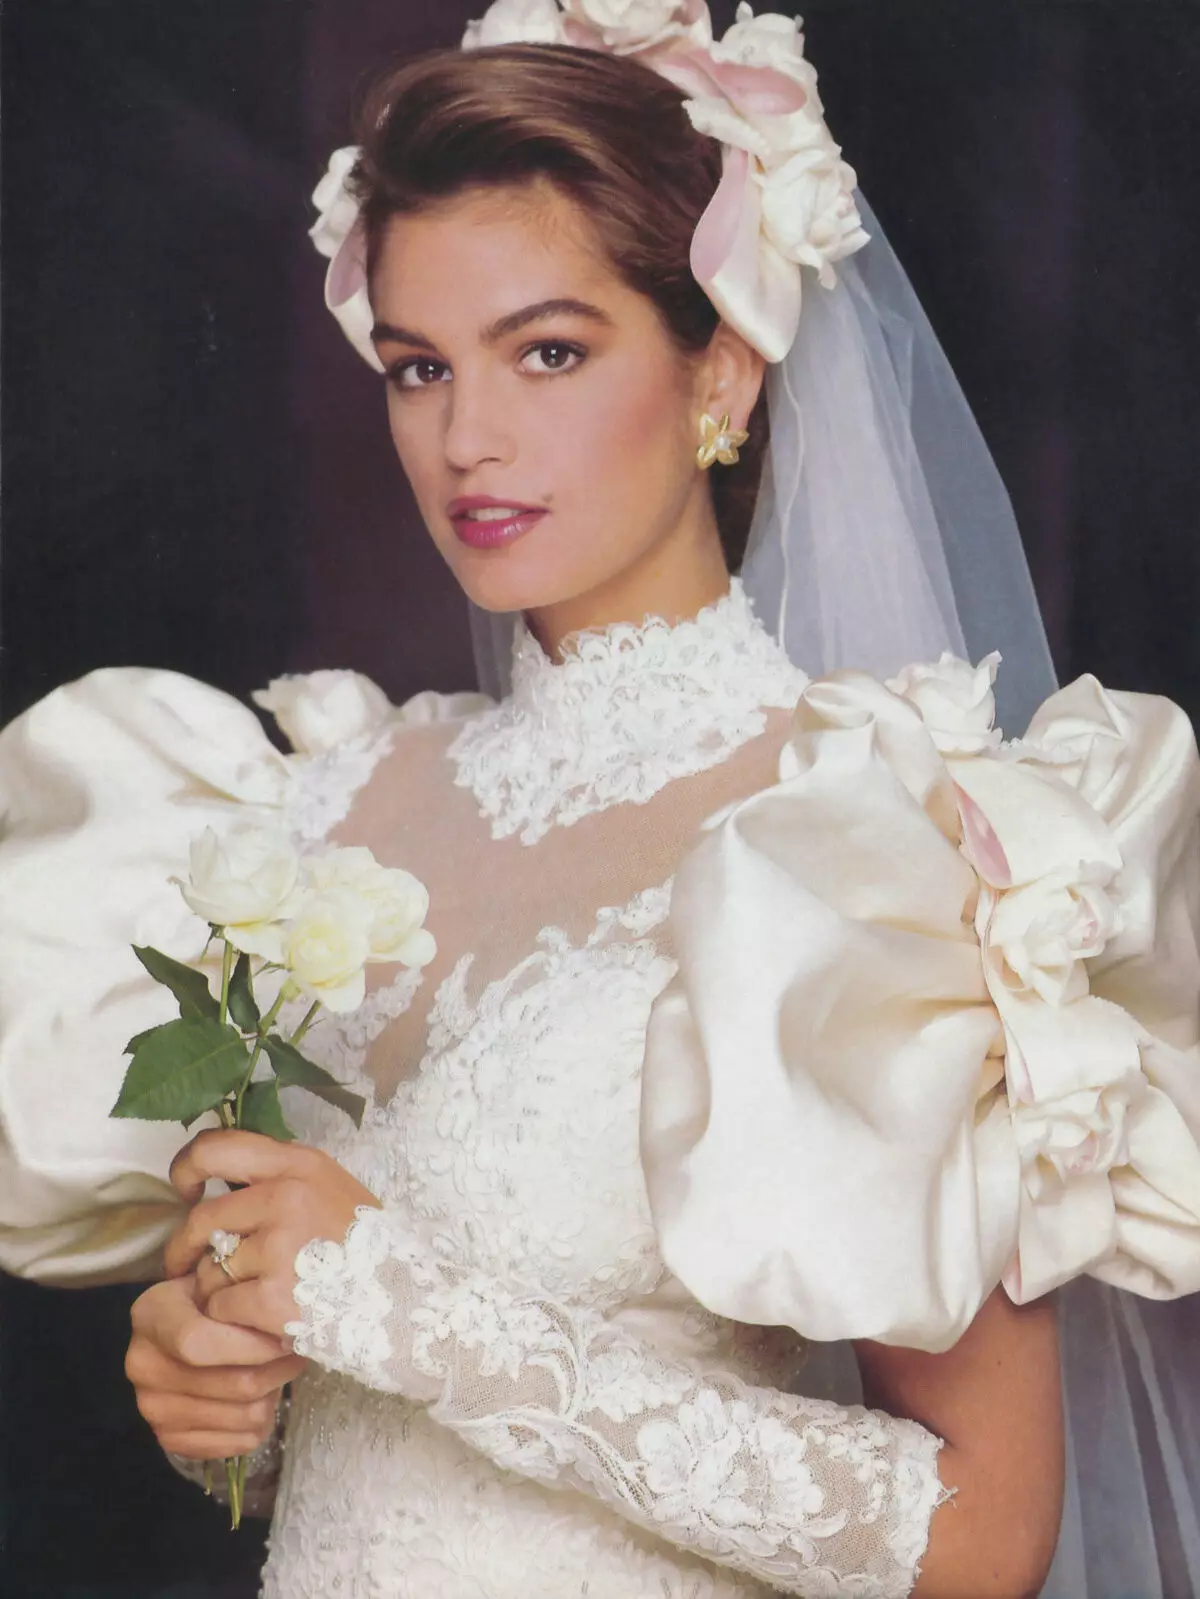 婚紗禮服在80年代的風格